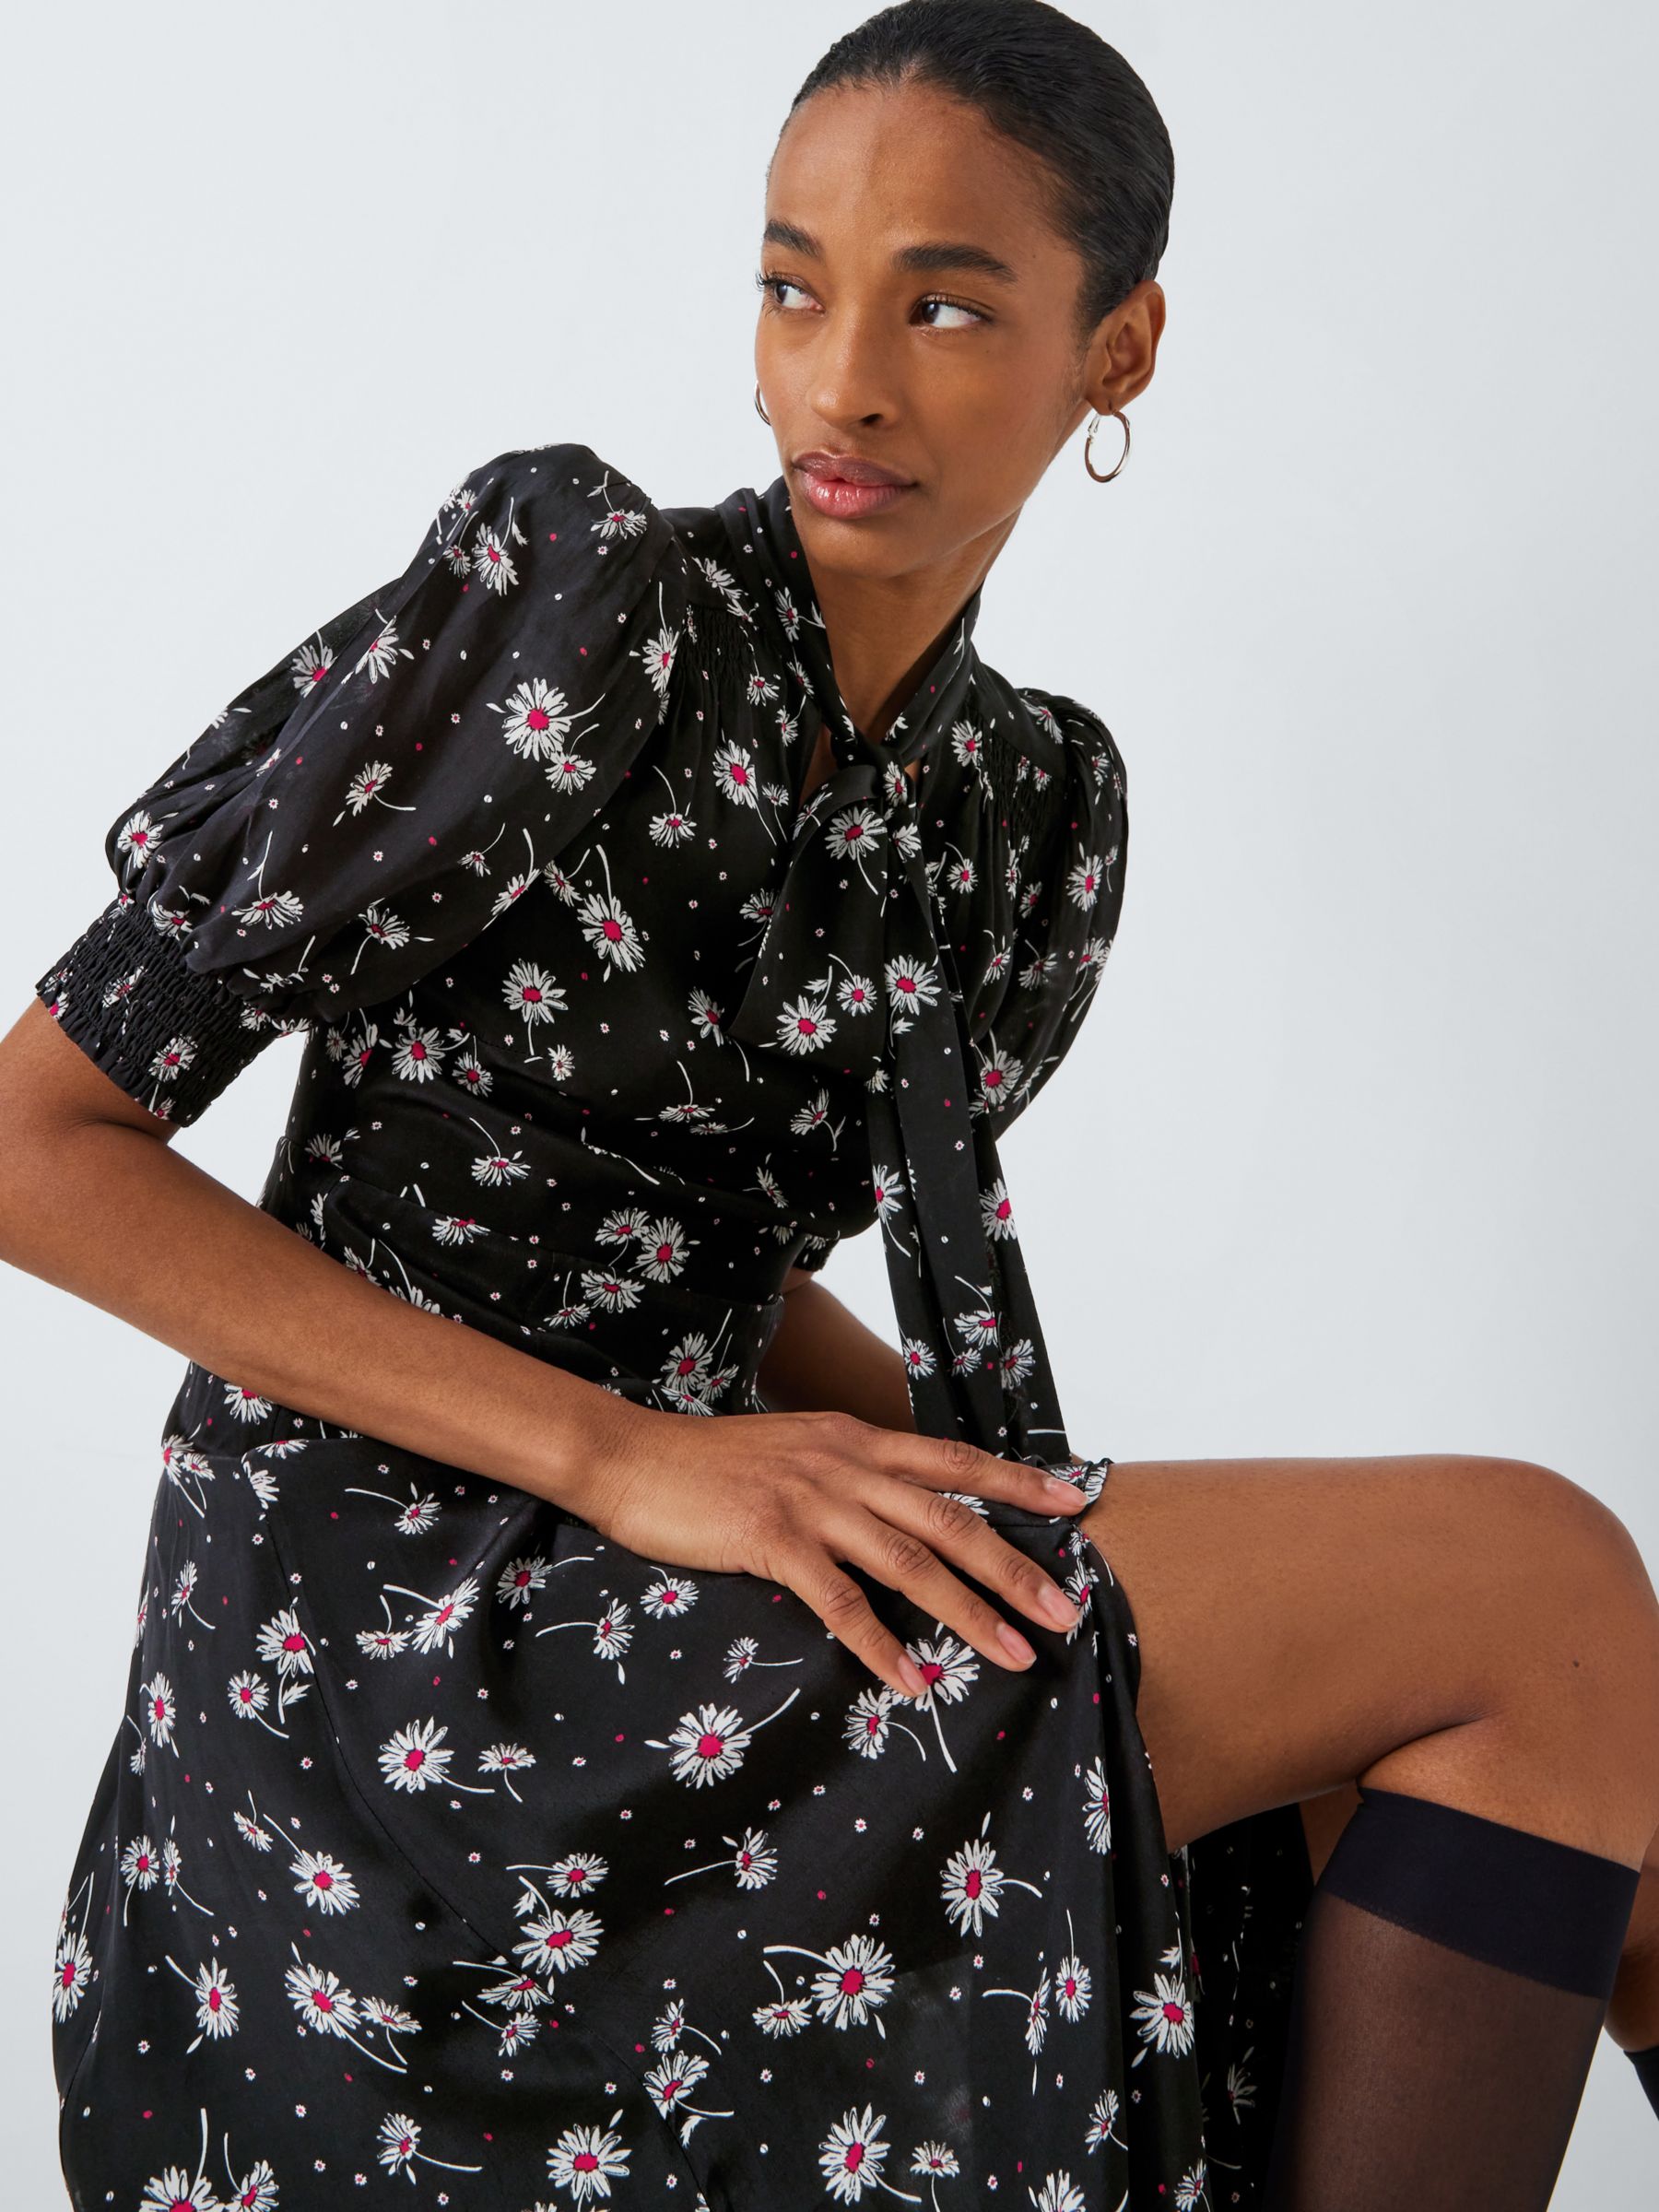 Queens of archive Rhiannon Daisy Print Maxi Dress, Black/Multi, M